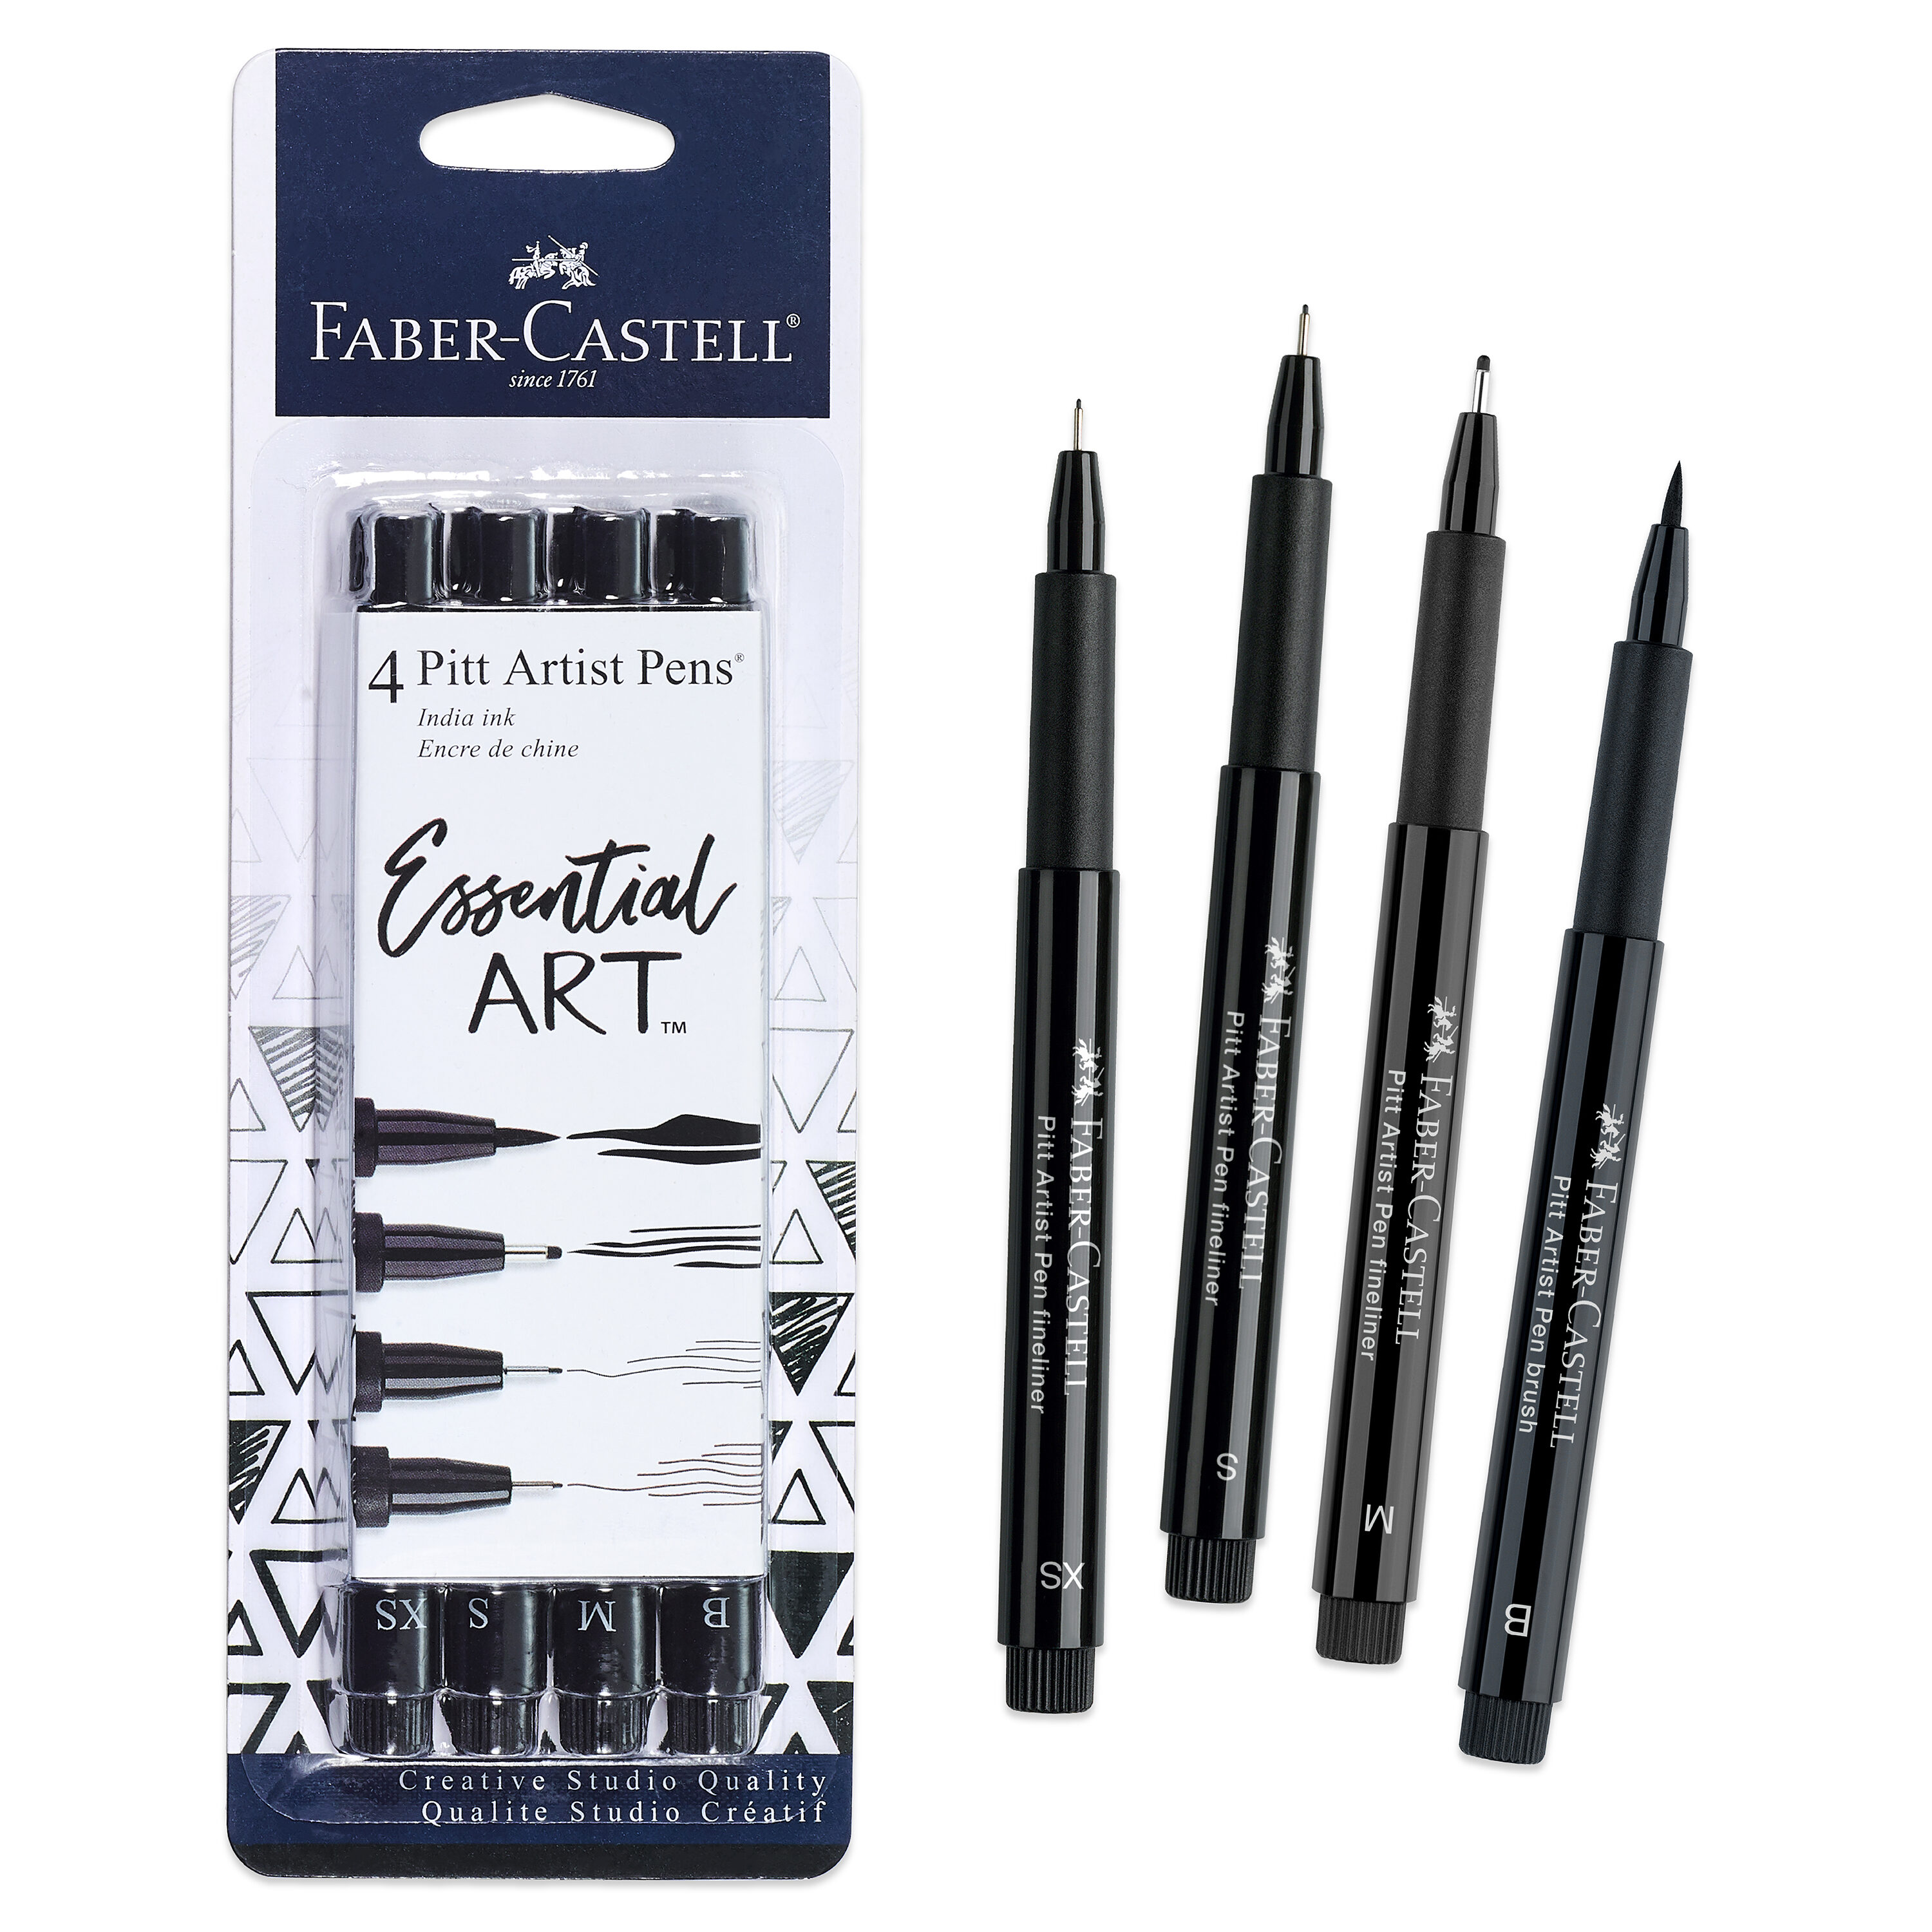 Faber-Castell Pitt Artist Pen- Essential Art in the Craft Supplies